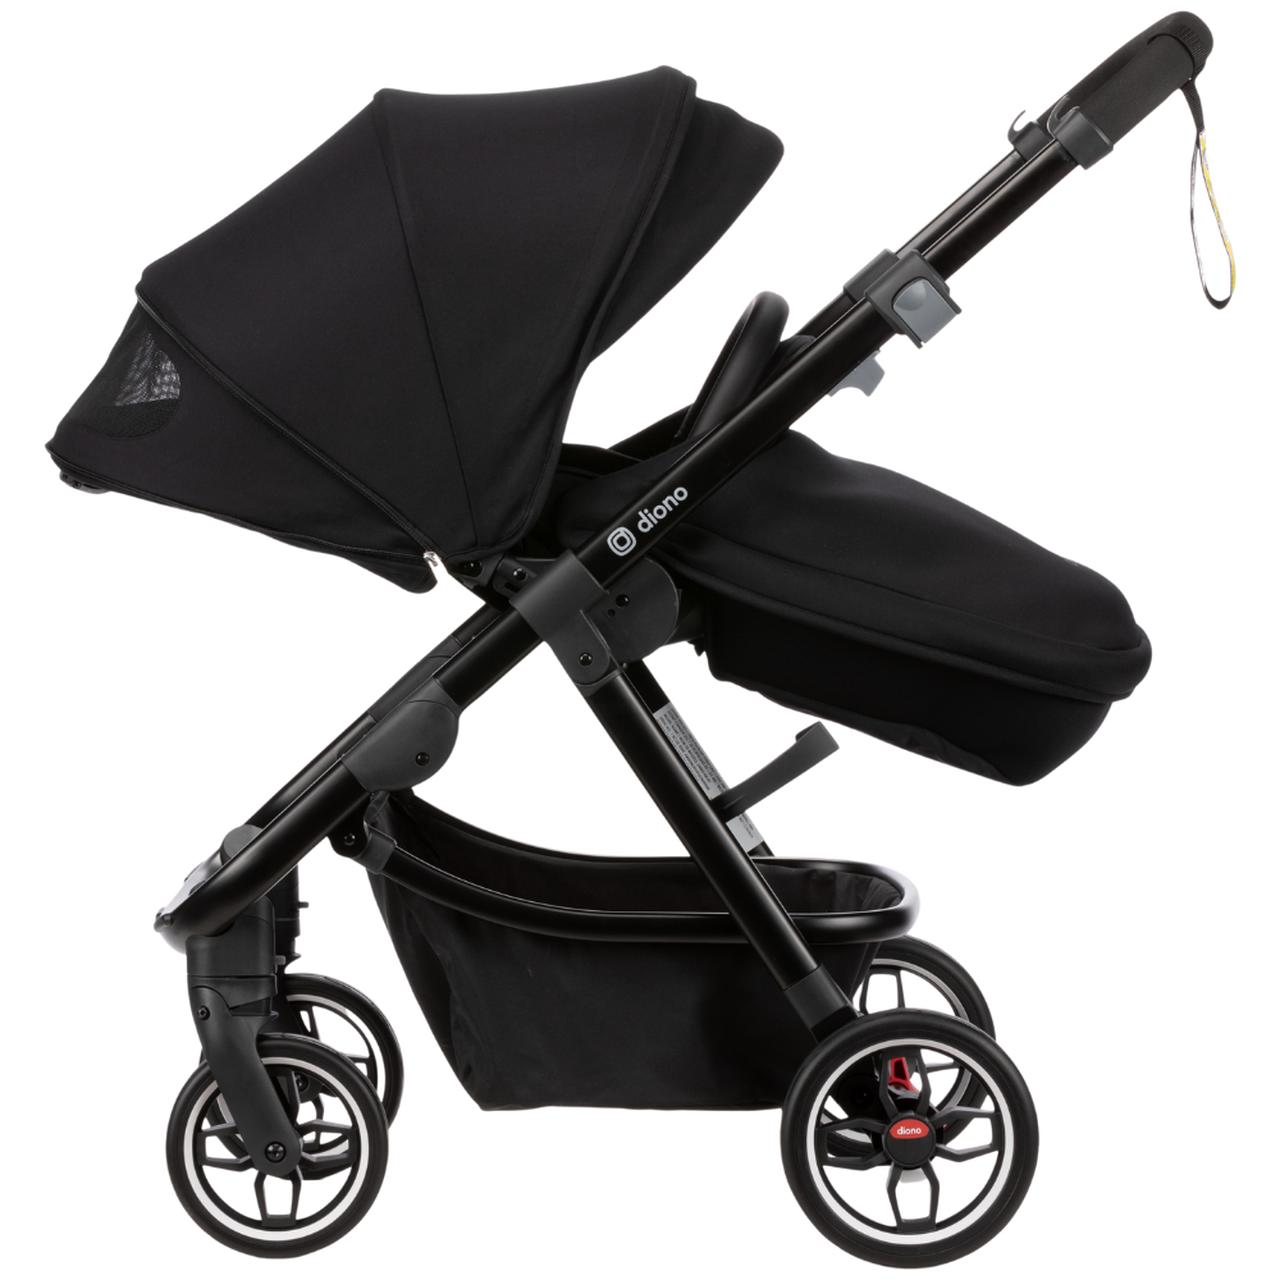  Reversible Baby Stroller, ELITTLE EMU Full-Size